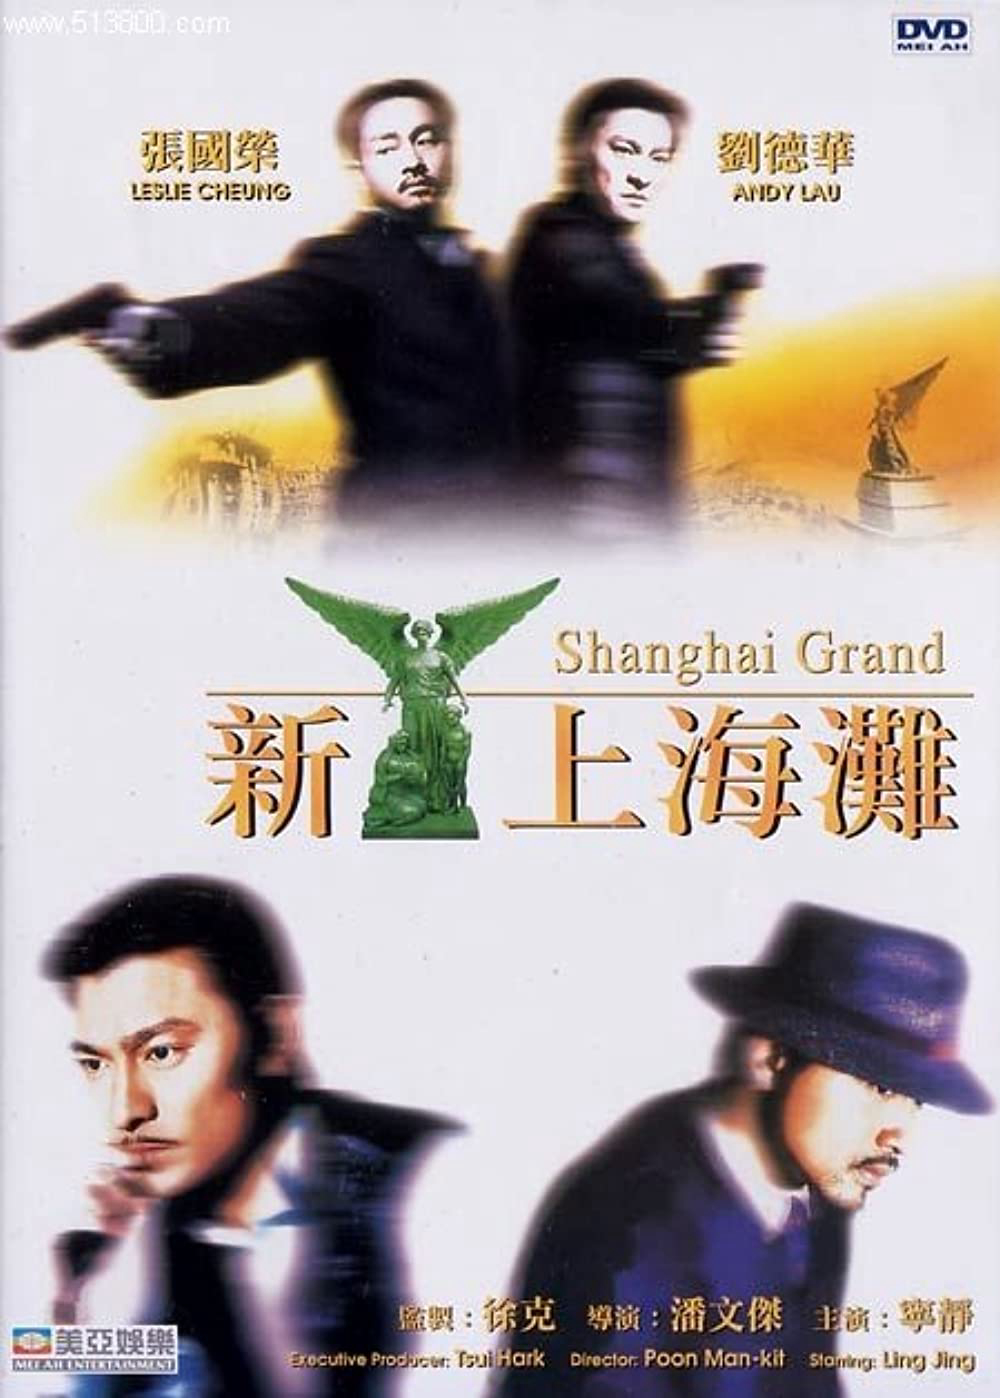 Xem Phim Bến Thượng Hải (Shanghai Grand)